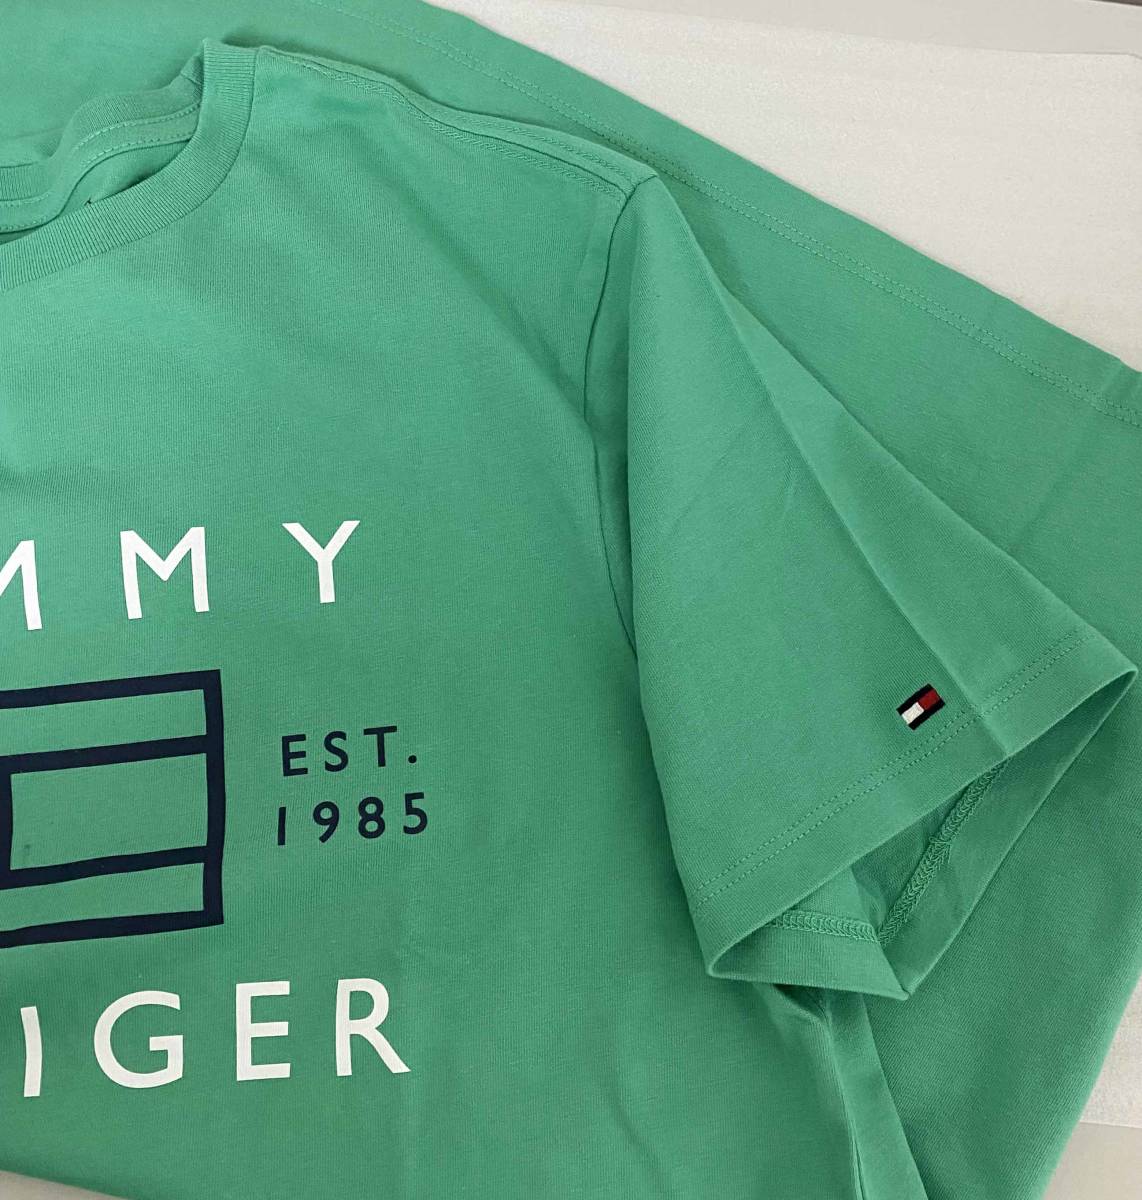 新品 XL ★ TOMMY HILFIGER トミーヒルフィガー メンズ 半袖 ロゴ Tシャツ グリーン US-L ロゴ刺繍 ビッグロゴ レディース ユニセックス